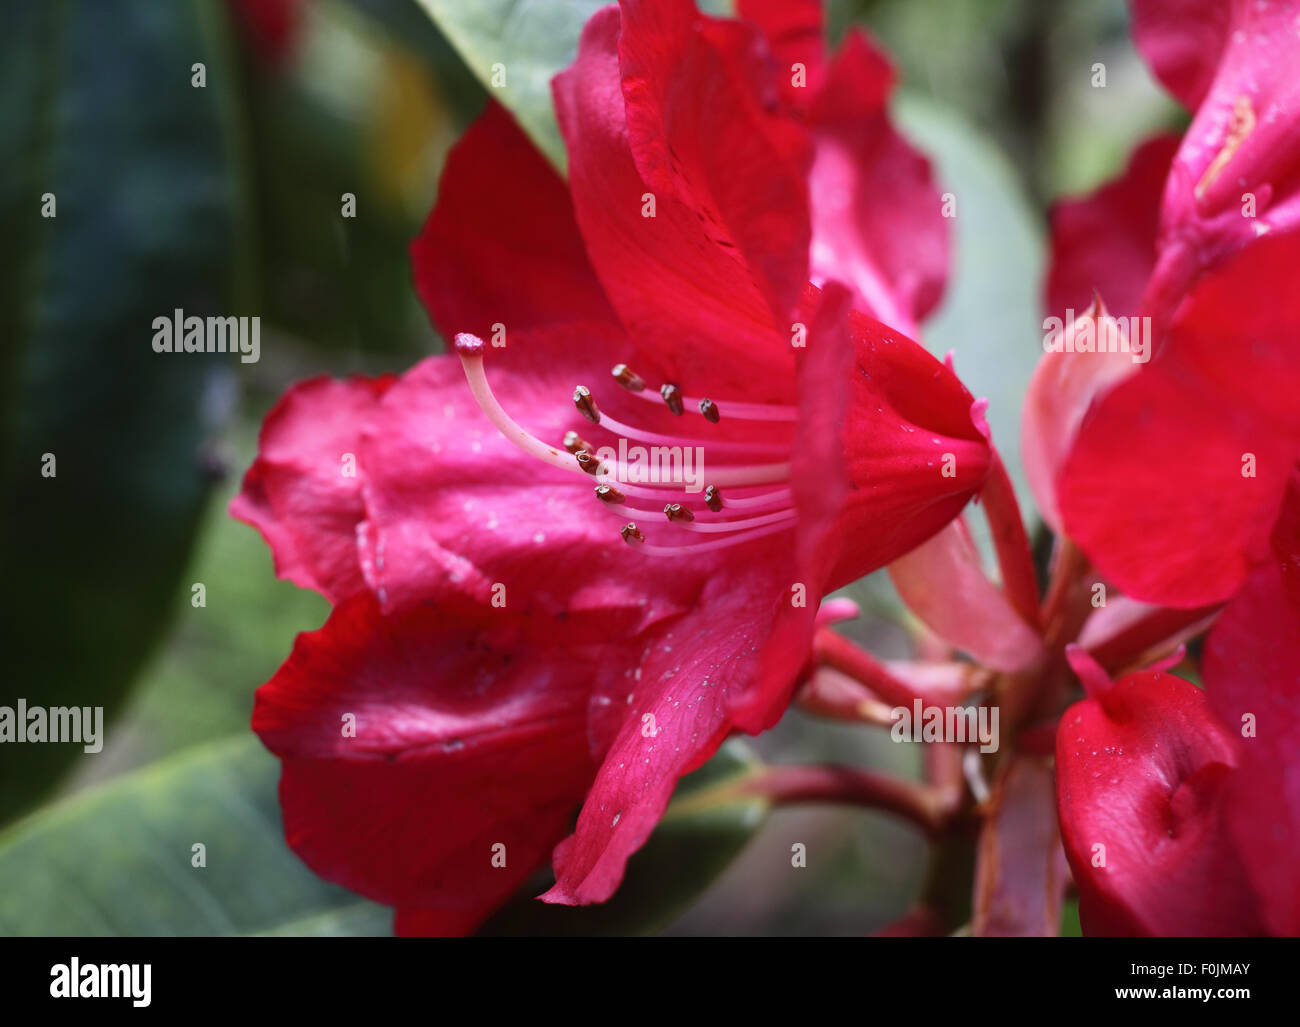 Rhododendron mostra close up della stigmatizzazione e stami Foto Stock